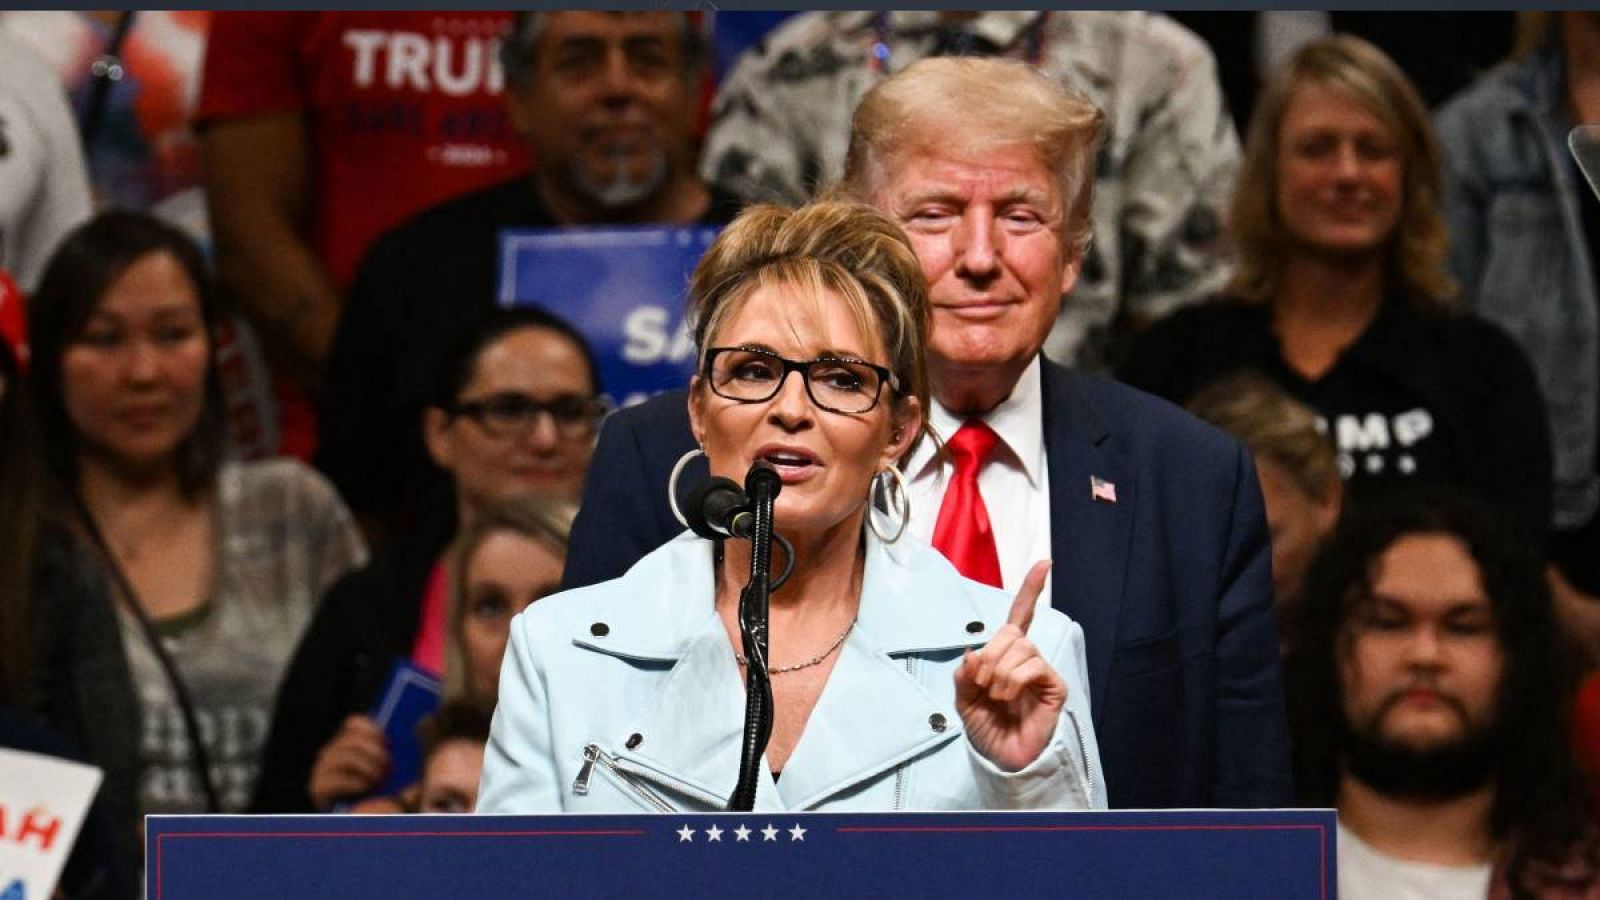 La candidata a la Cámara de Representantes, Sarah Palin (izquierda), habla junto al expresidente de los Estados Unidos, Donald Trump, durante un mitin de "Salvemos Estados Unidos" en Anchorage, Alaska.